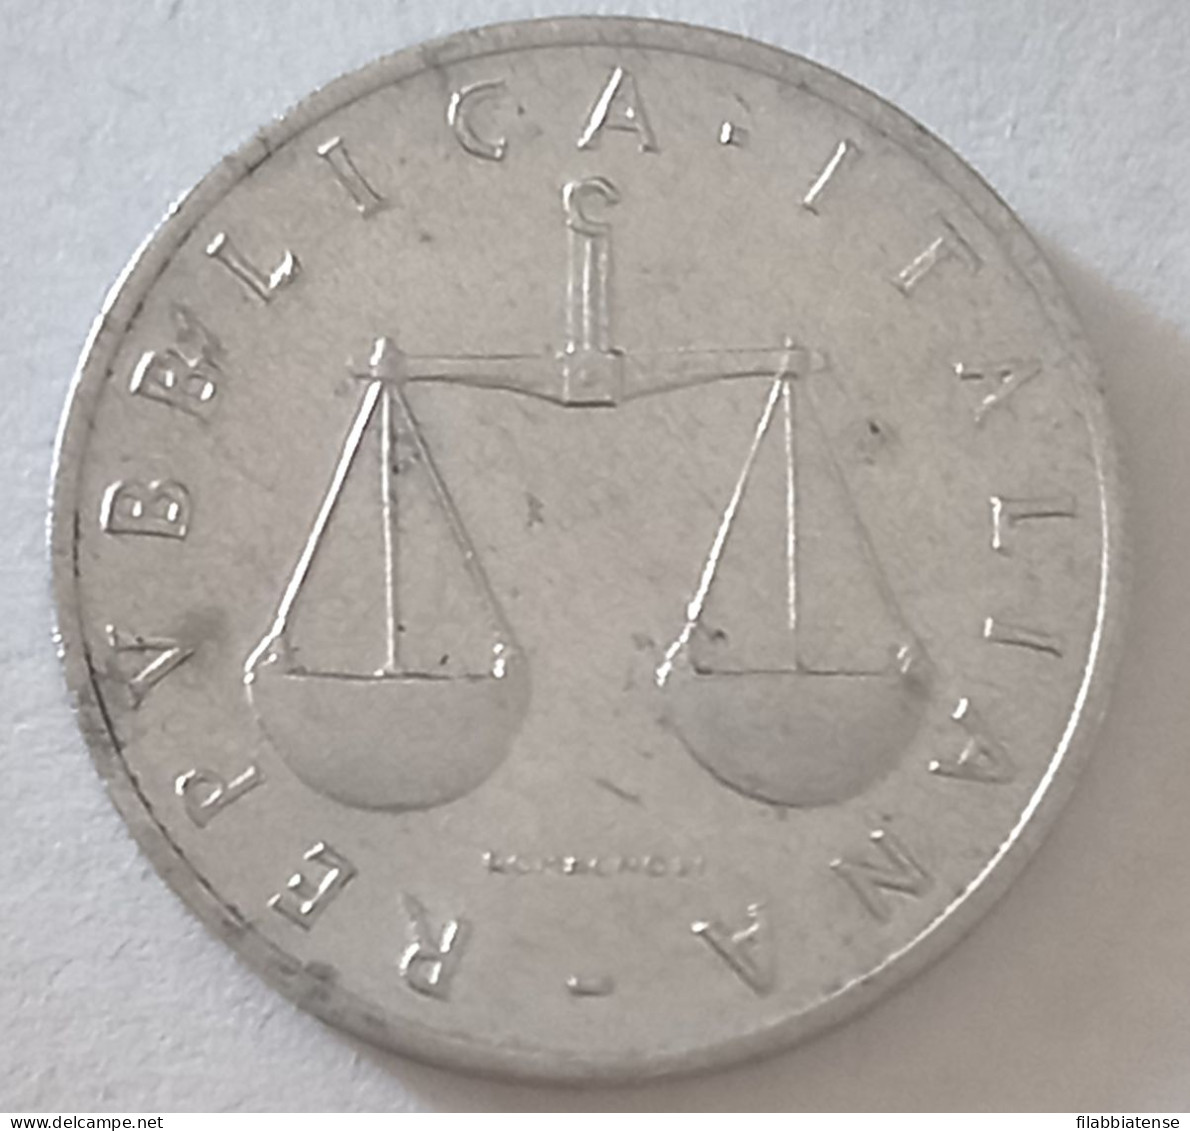 1970 - Italia 1 Lira    ----- - 1 Lire